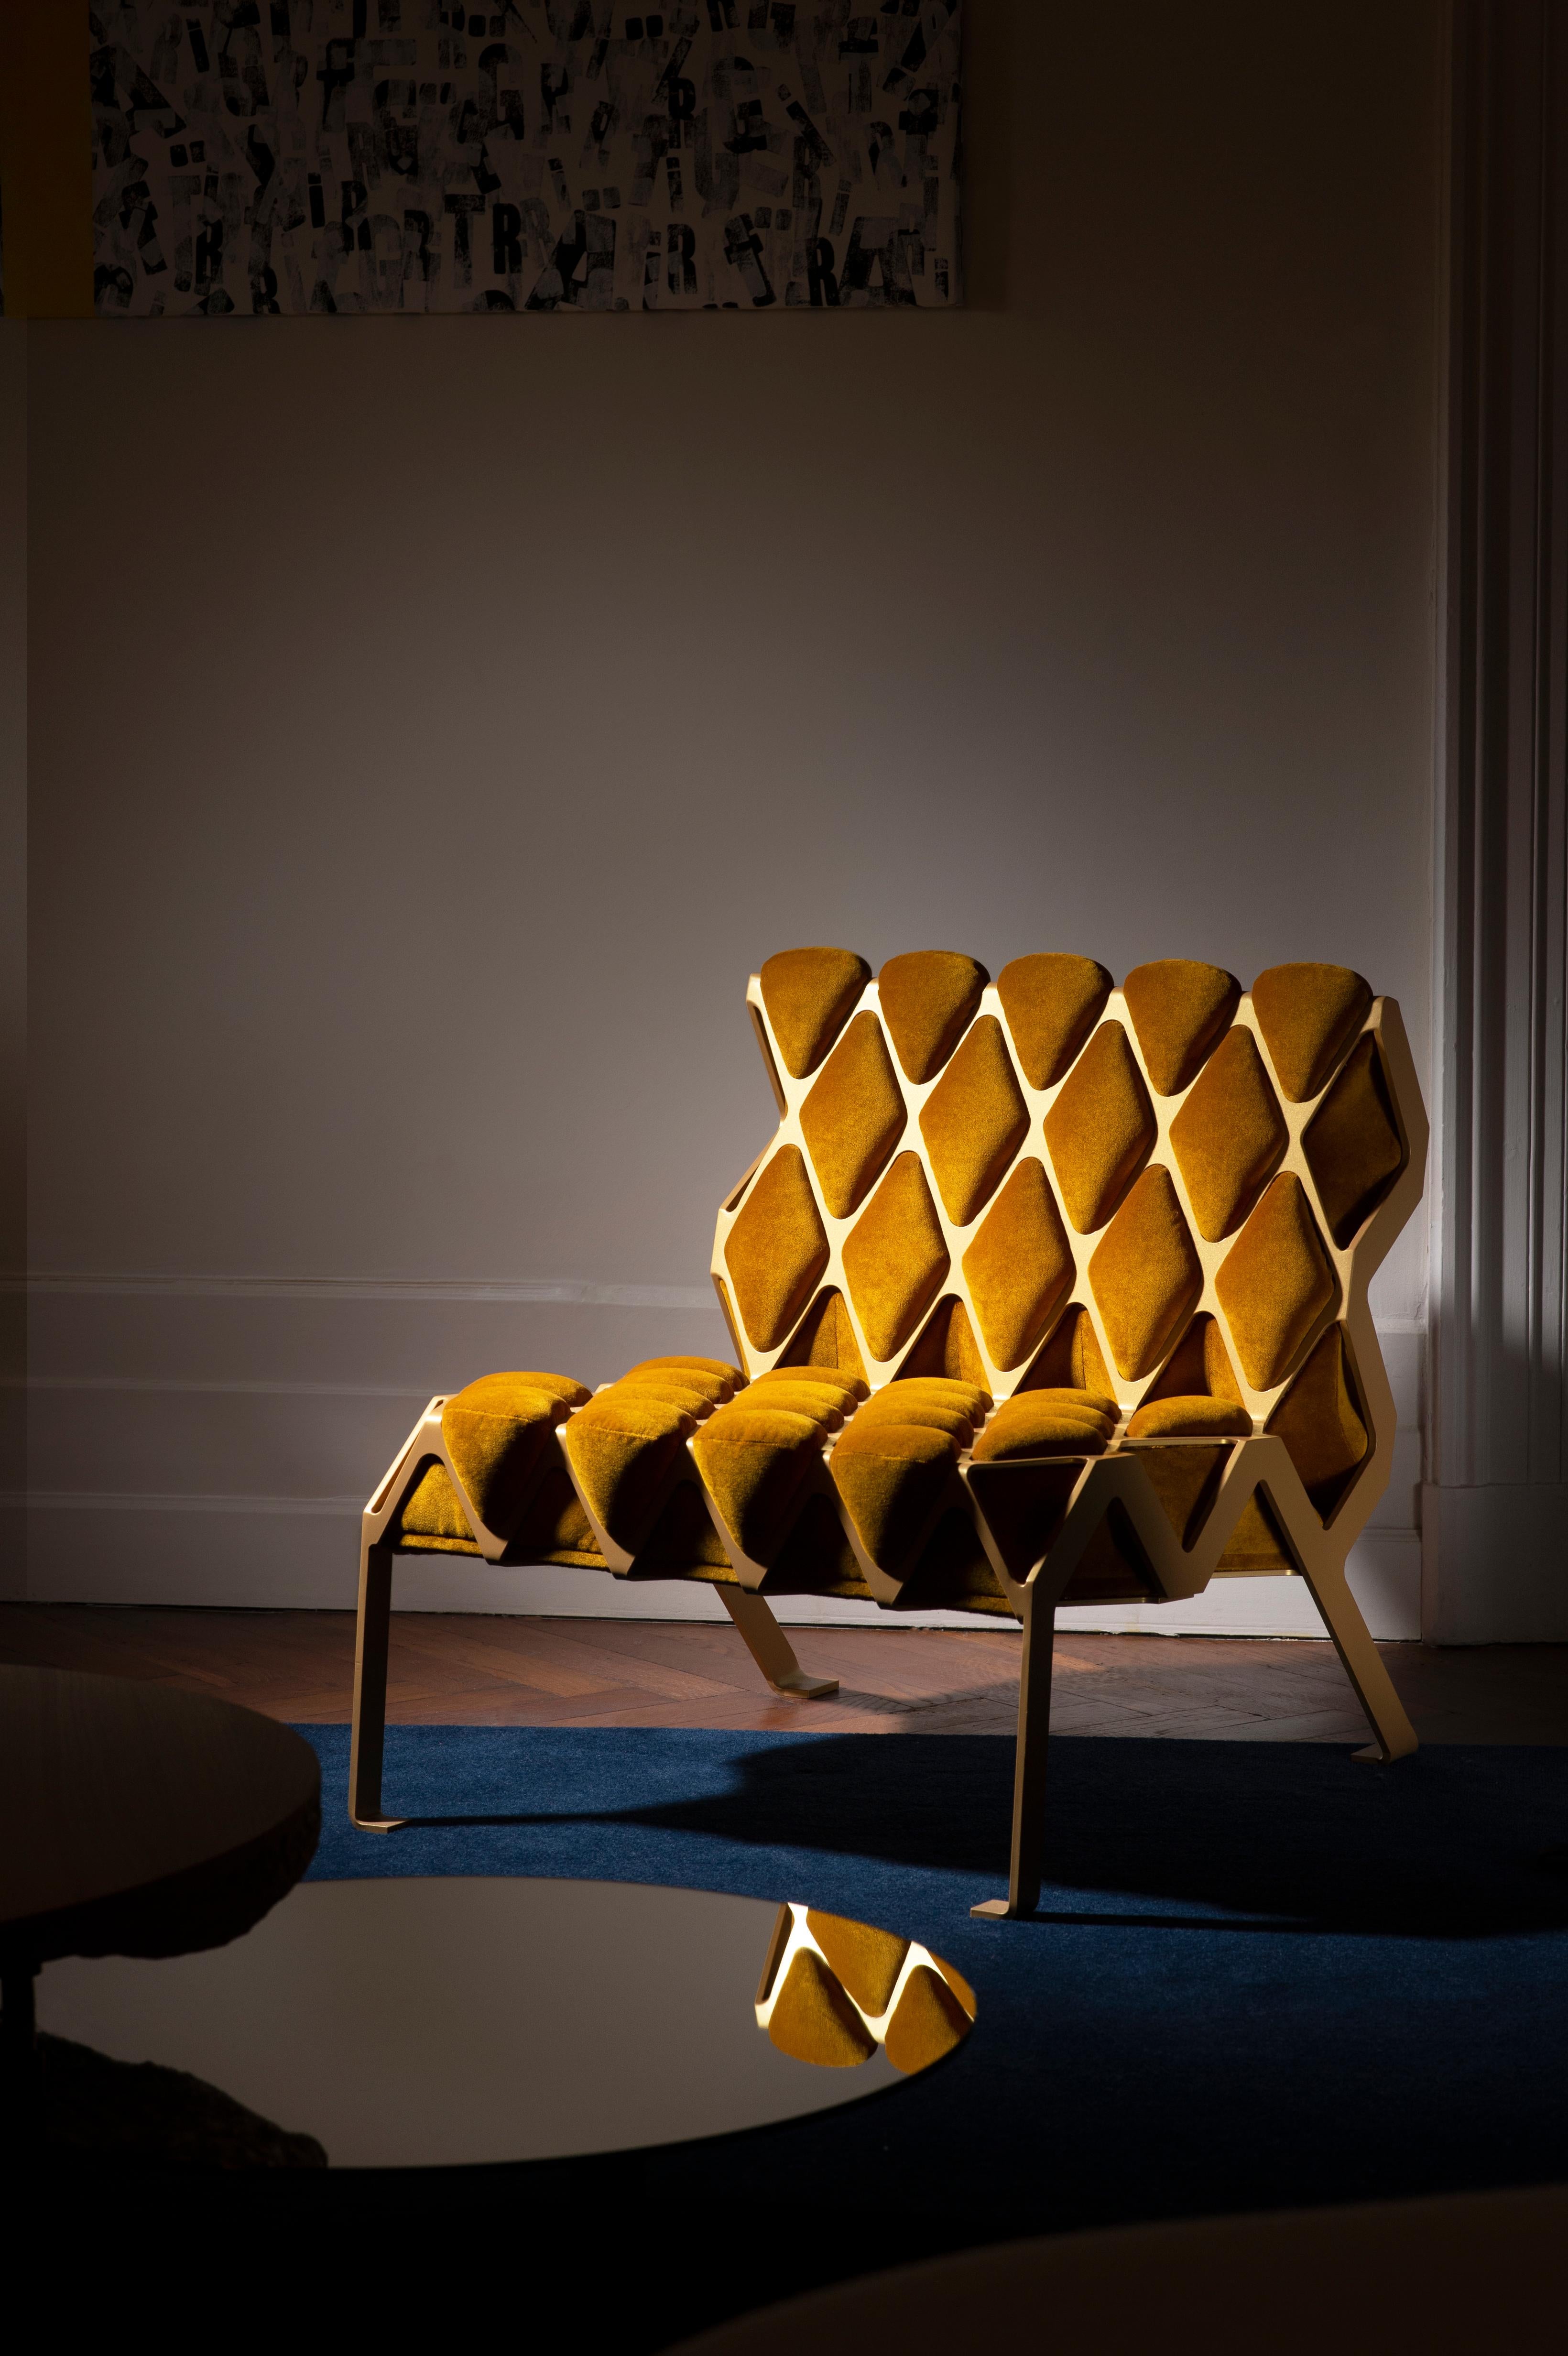 La chaise d'appoint Matrice est une chaise d'appoint conçue autour de l'empreinte. L'empreinte créée par l'interaction entre deux matériaux, l'un ductile et l'autre mou. Inspiration des photos de Gabriele Basilico sur des chaises imprimées

Matrice